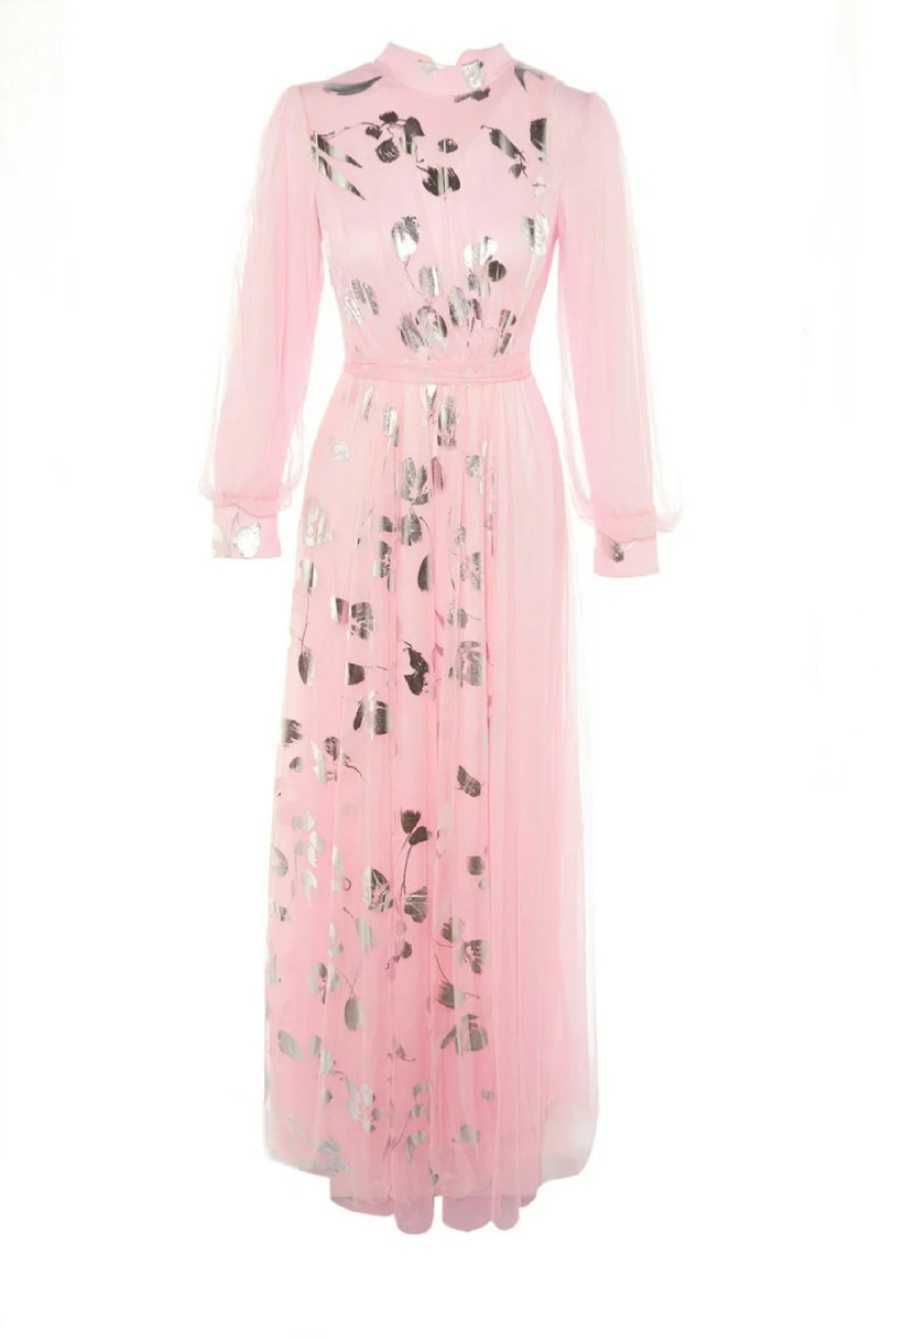 Дамска нова дълга розова рокля размер М/38